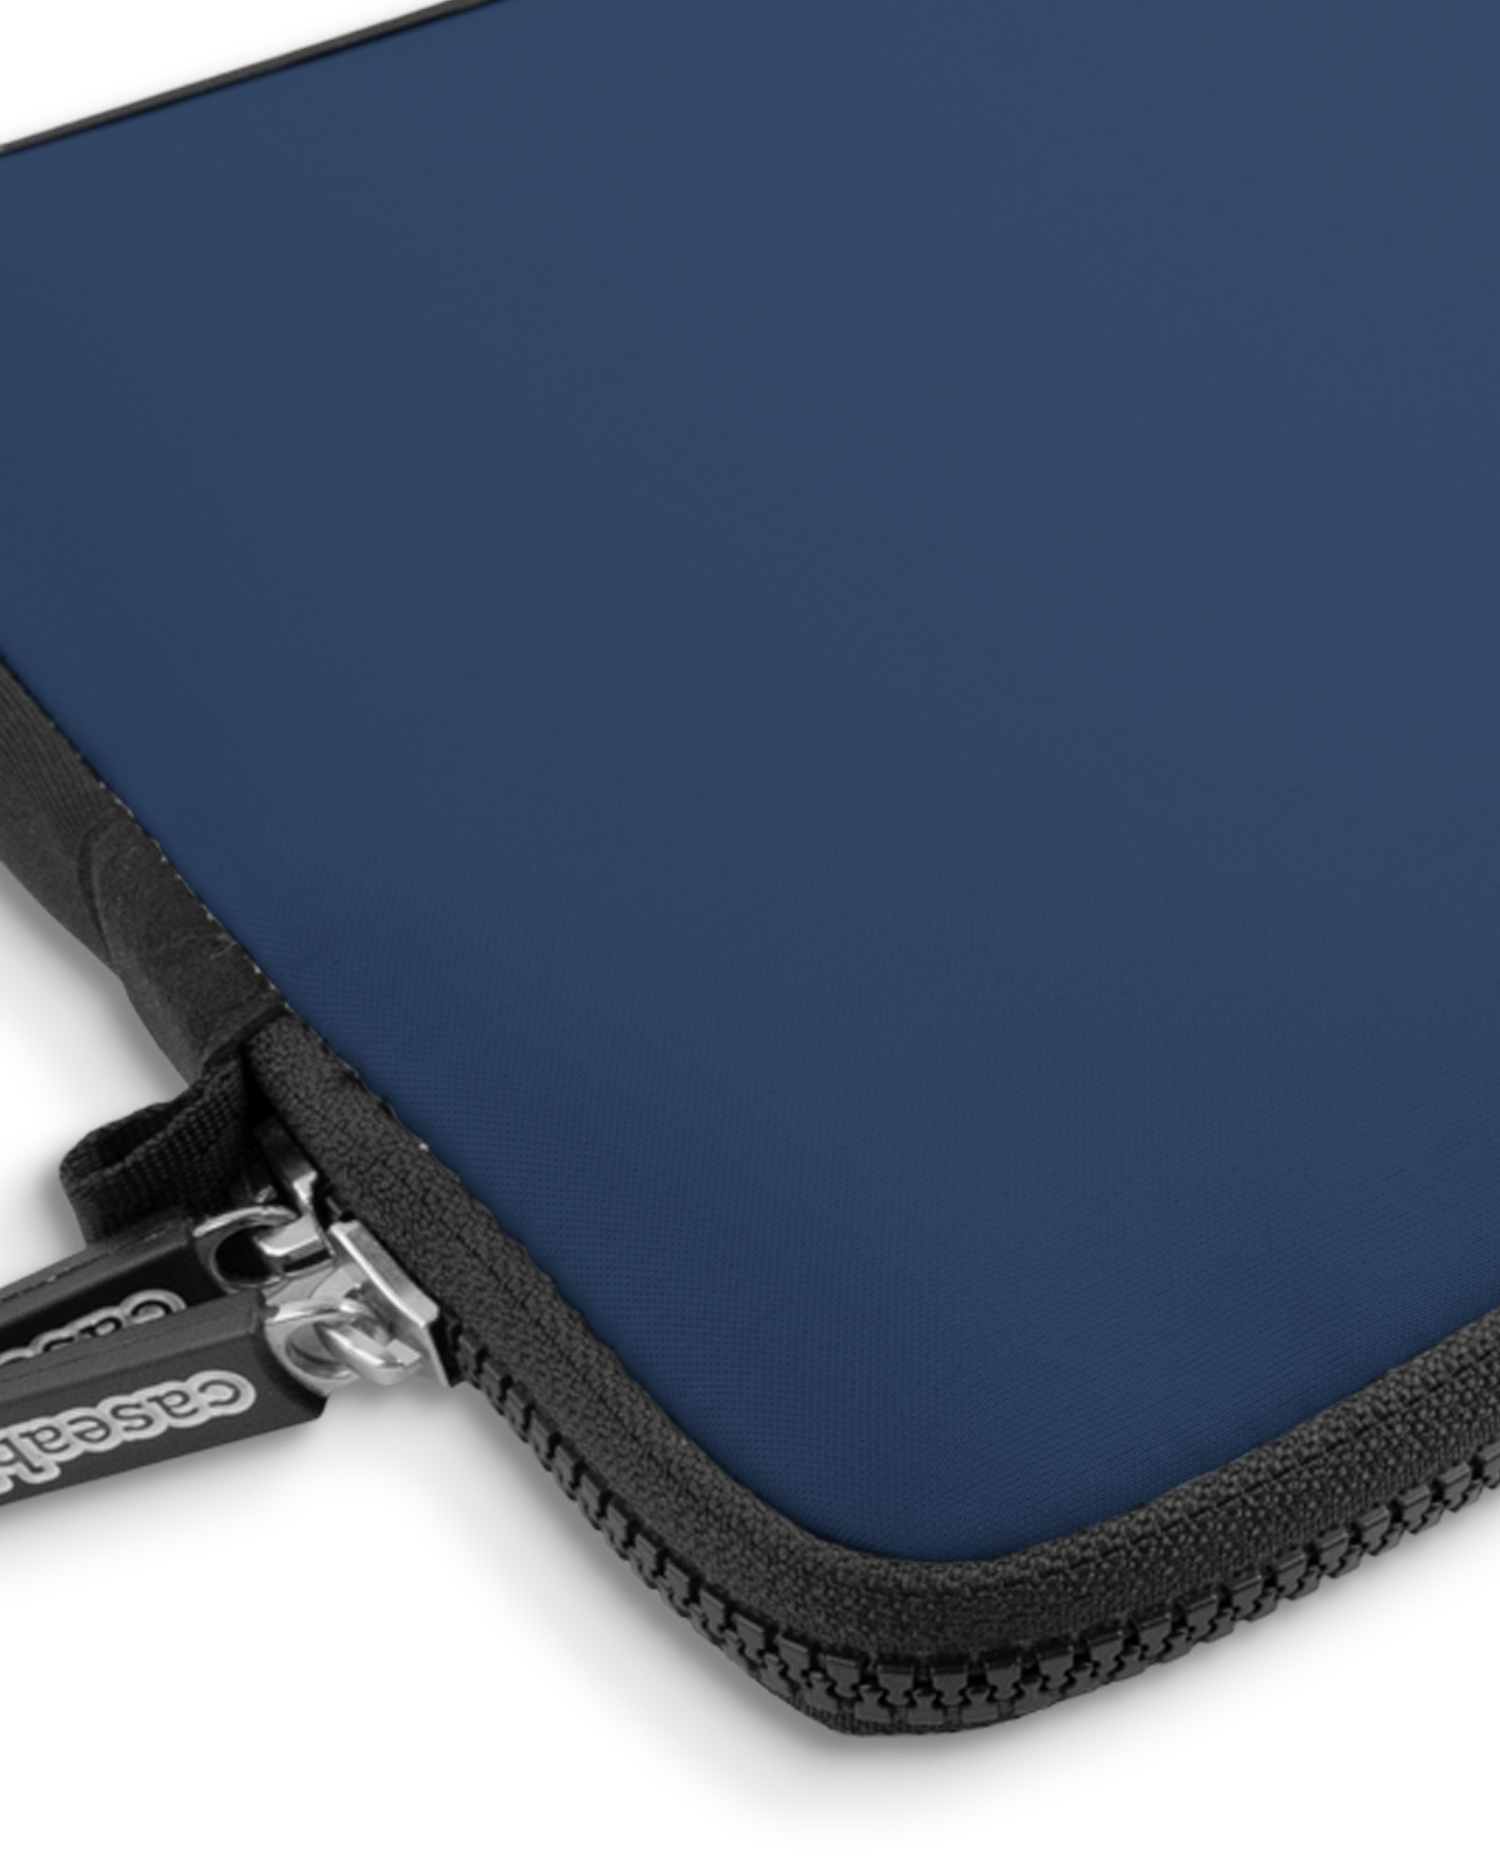 NAVY Premium Laptoptasche 13 Zoll mit Gerät im Inneren